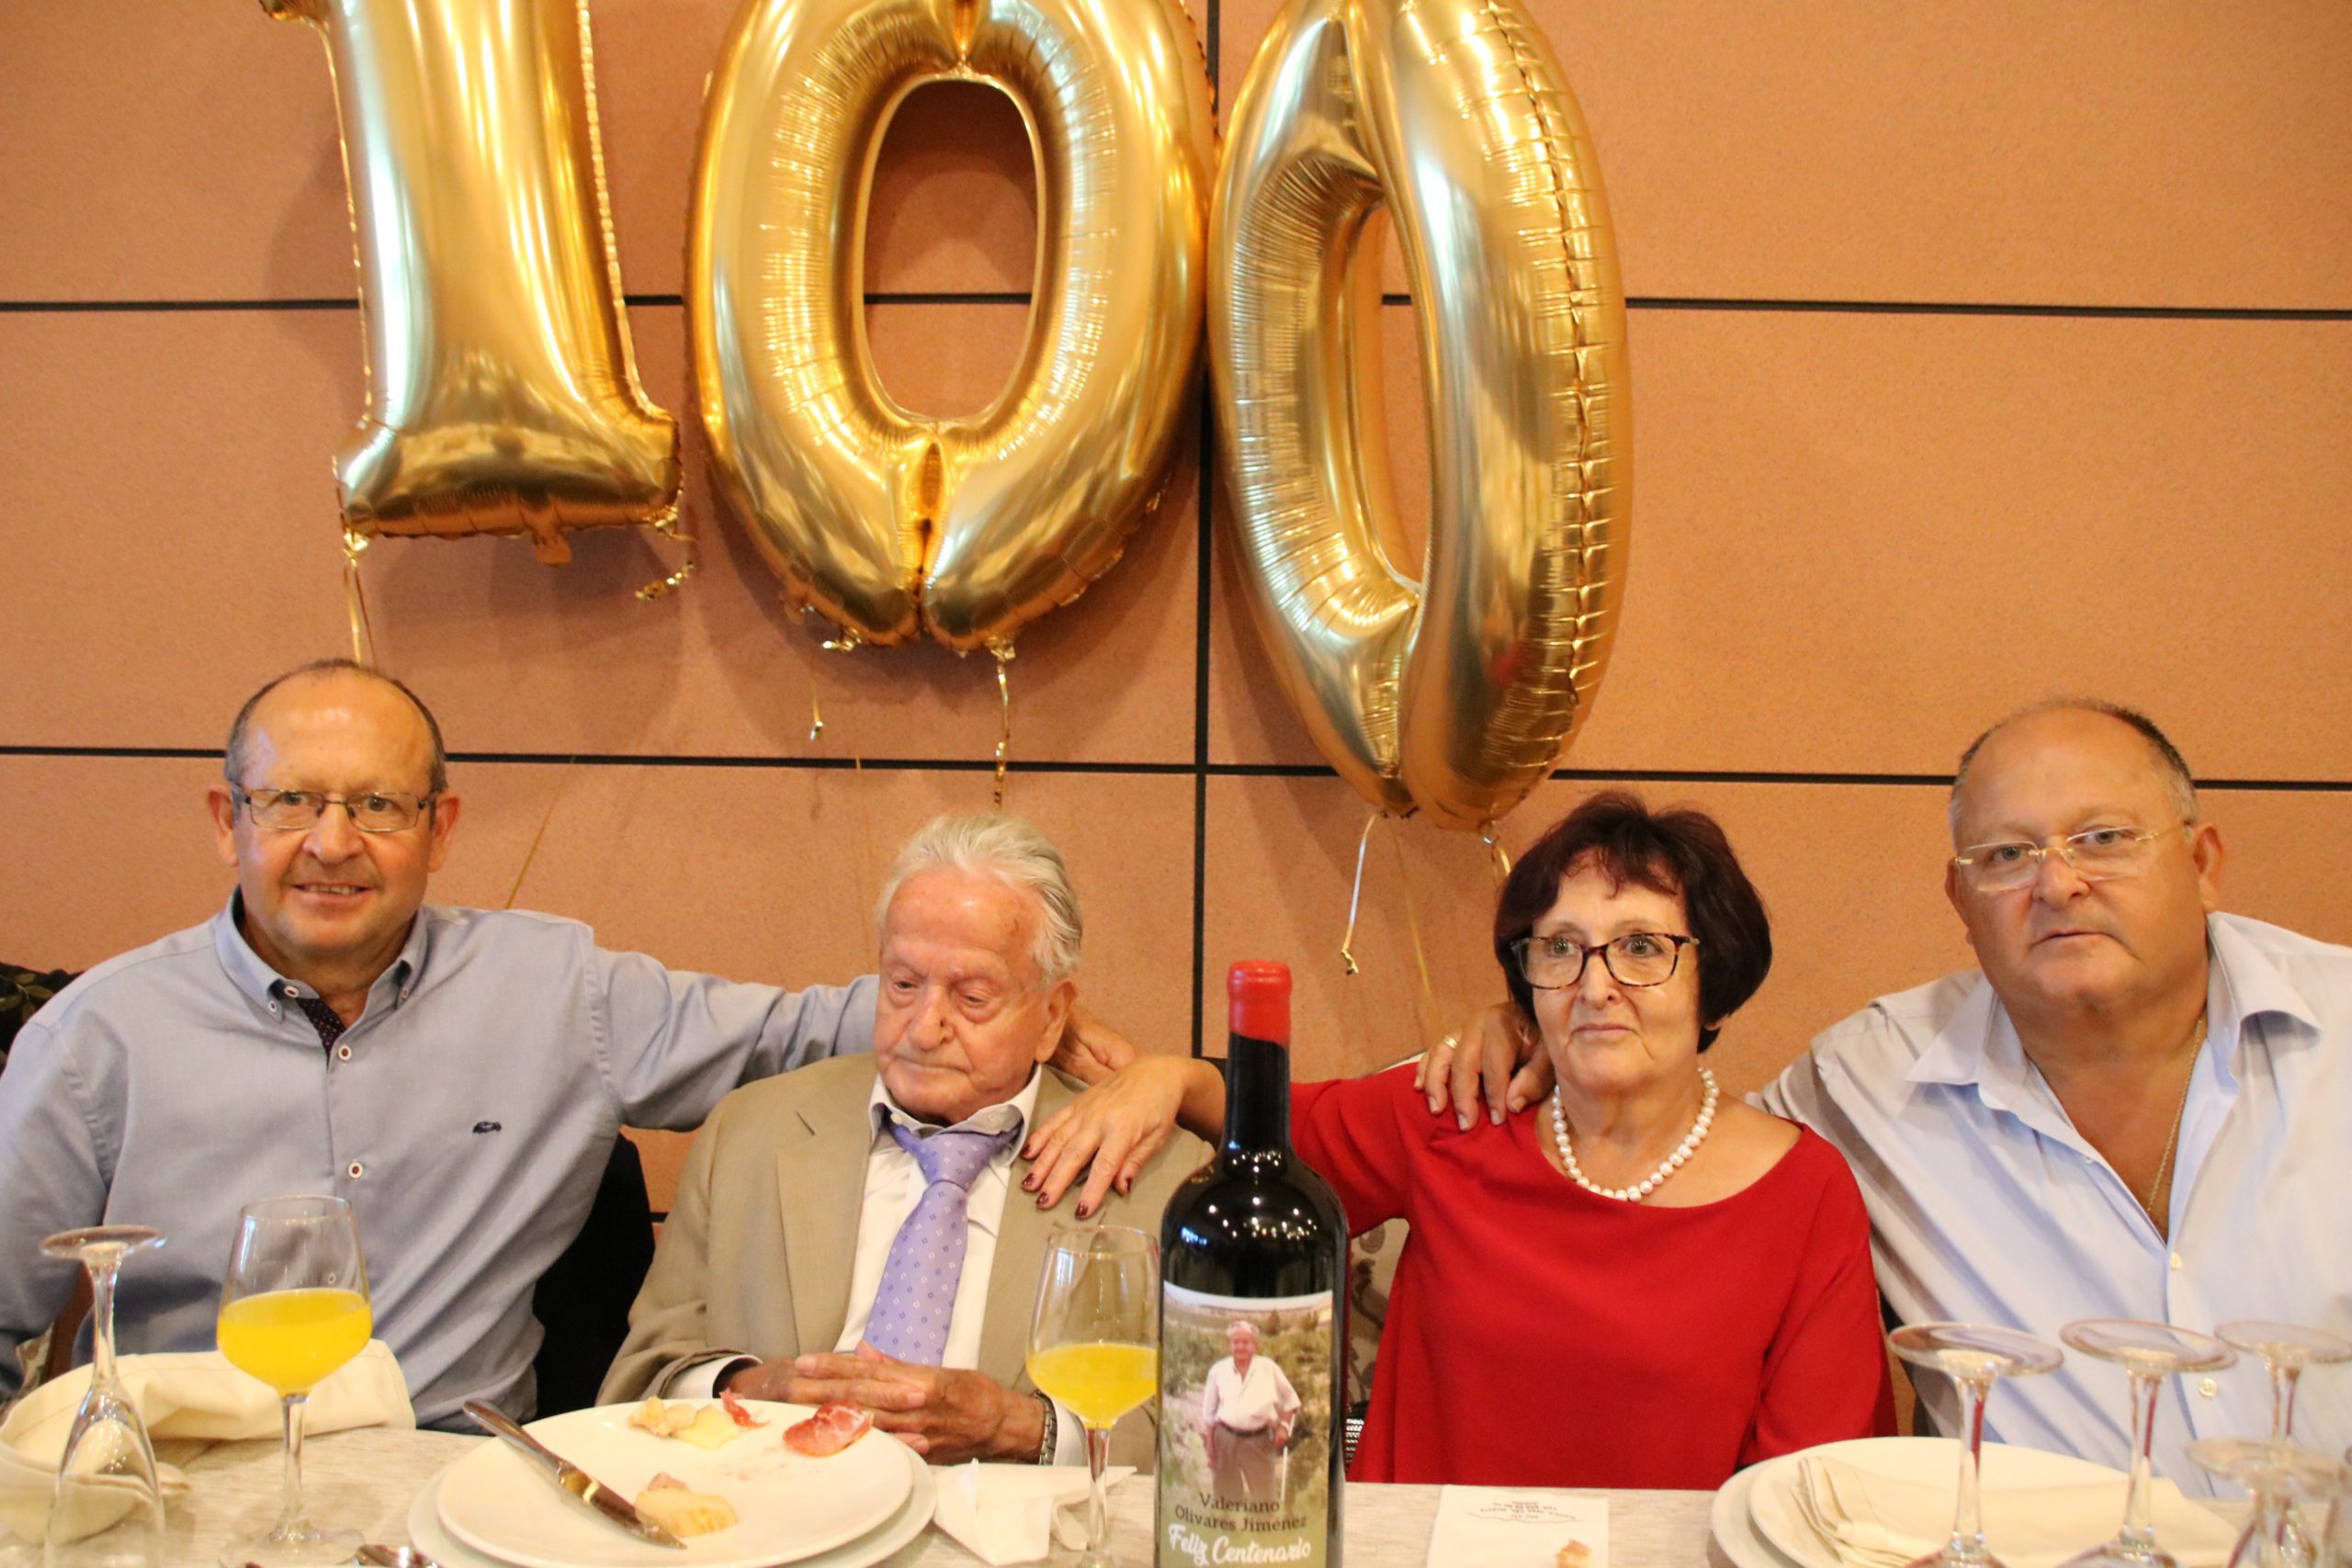 Fallece Valeriano Olivares Jiménez ‘el abuelo de Jumilla’ a los 102 años